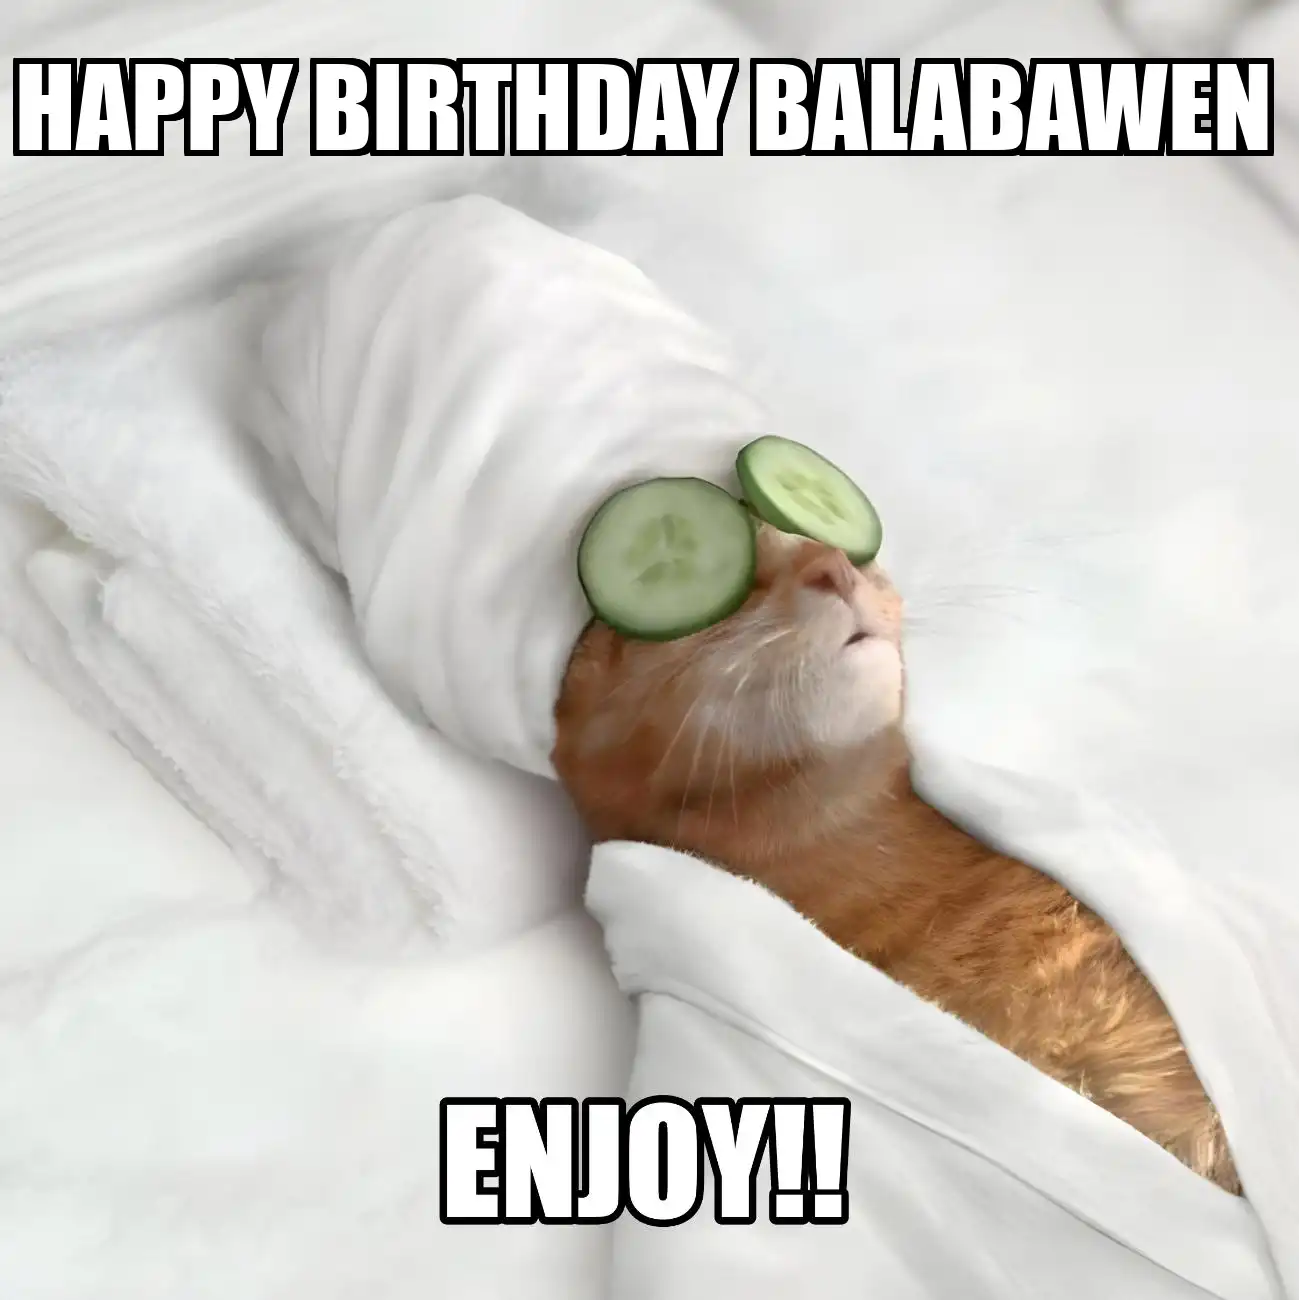 Happy Birthday Balabawen Enjoy Cat Meme